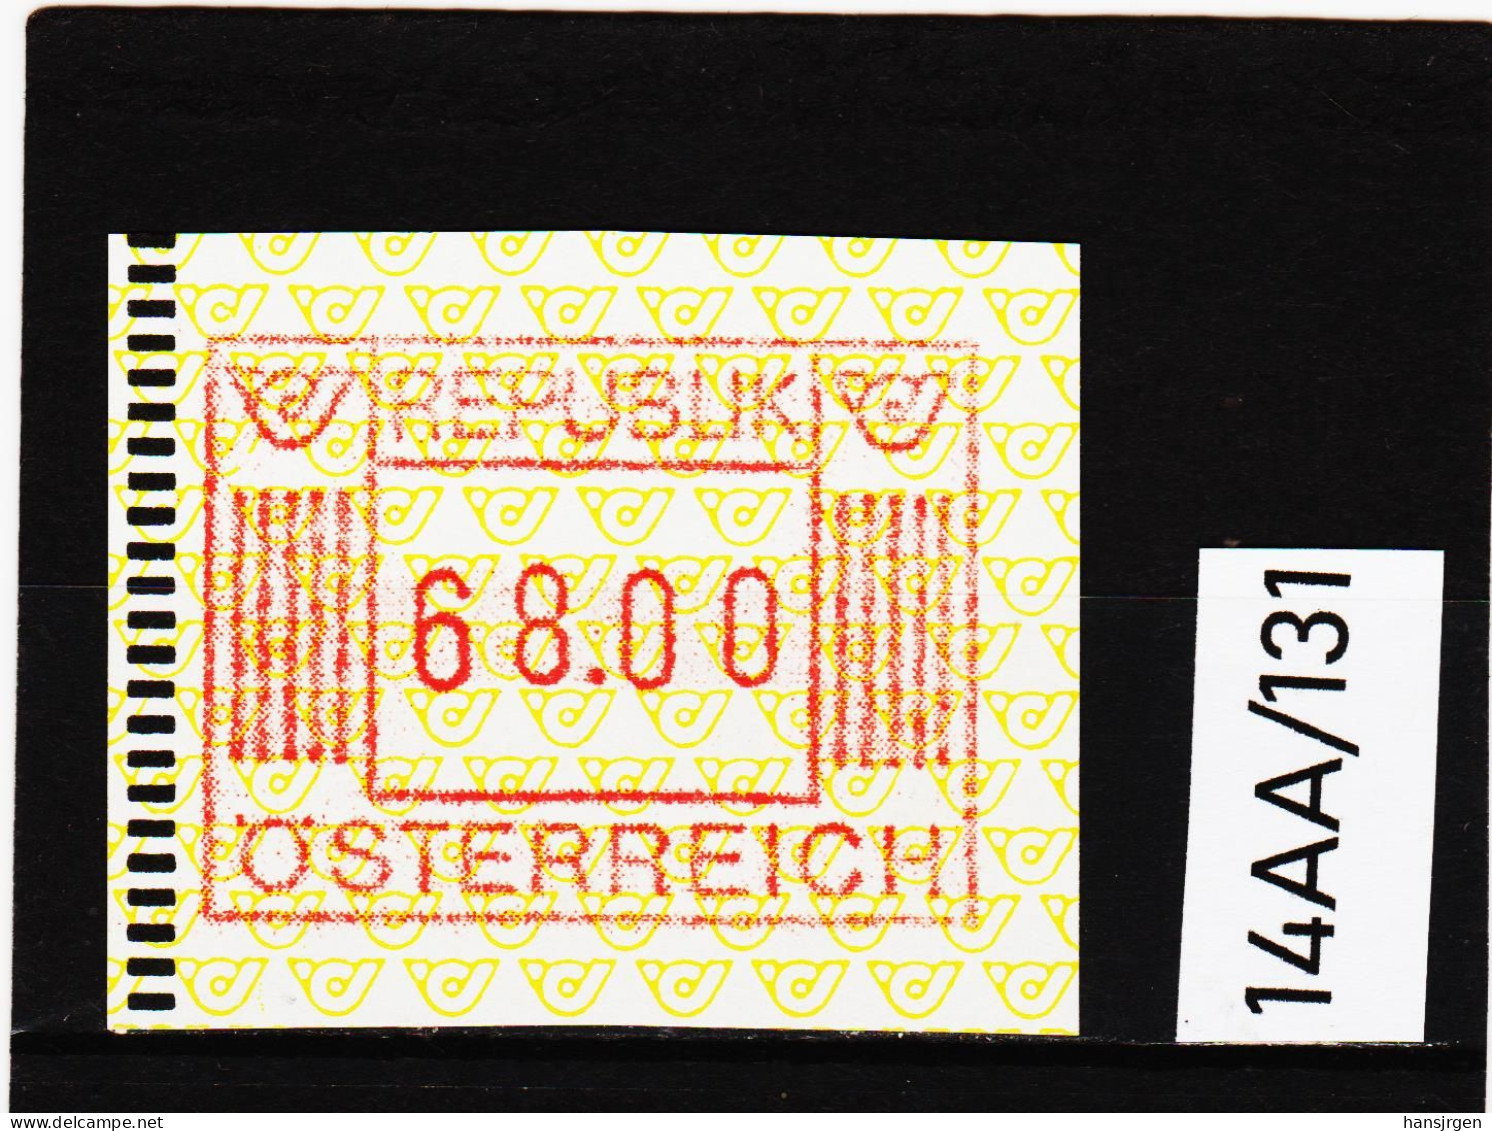 14AA/131  ÖSTERREICH 1983 AUTOMATENMARKEN  A N K  1. AUSGABE  68,00 SCHILLING   ** Postfrisch - Vignette [ATM]